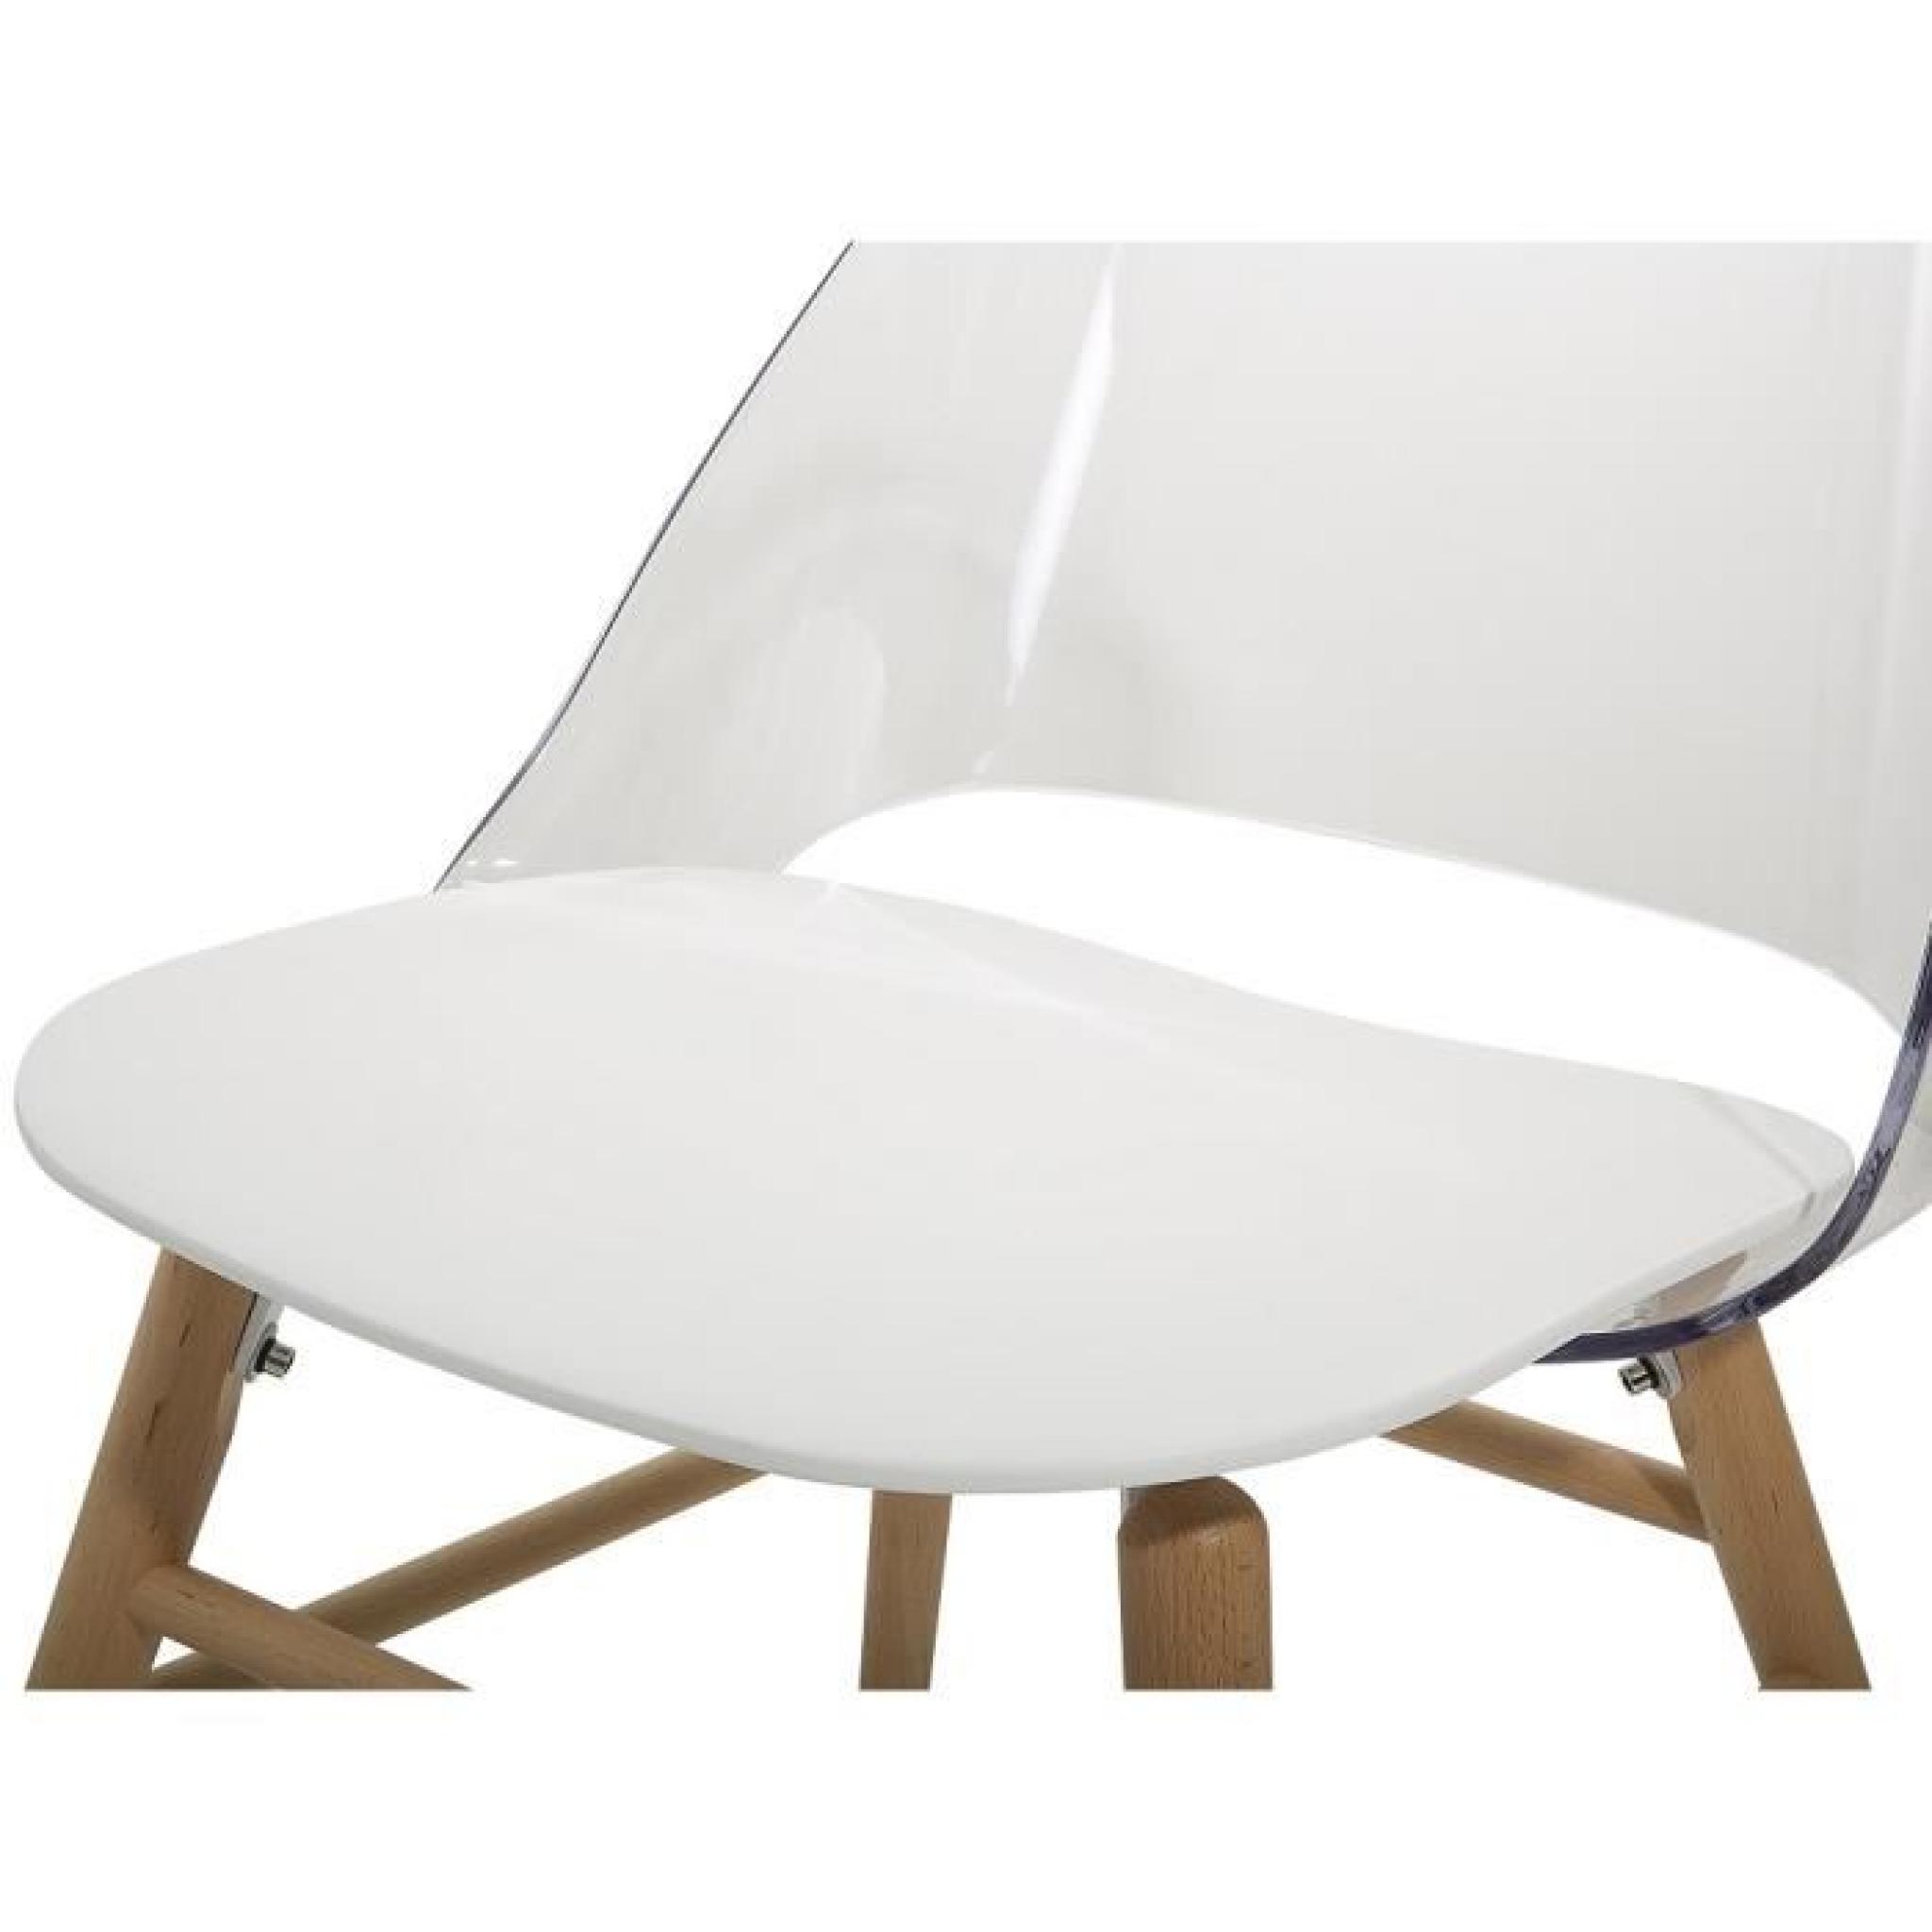 Chaise design - siège en plastique blanc / transparent - Milford pas cher